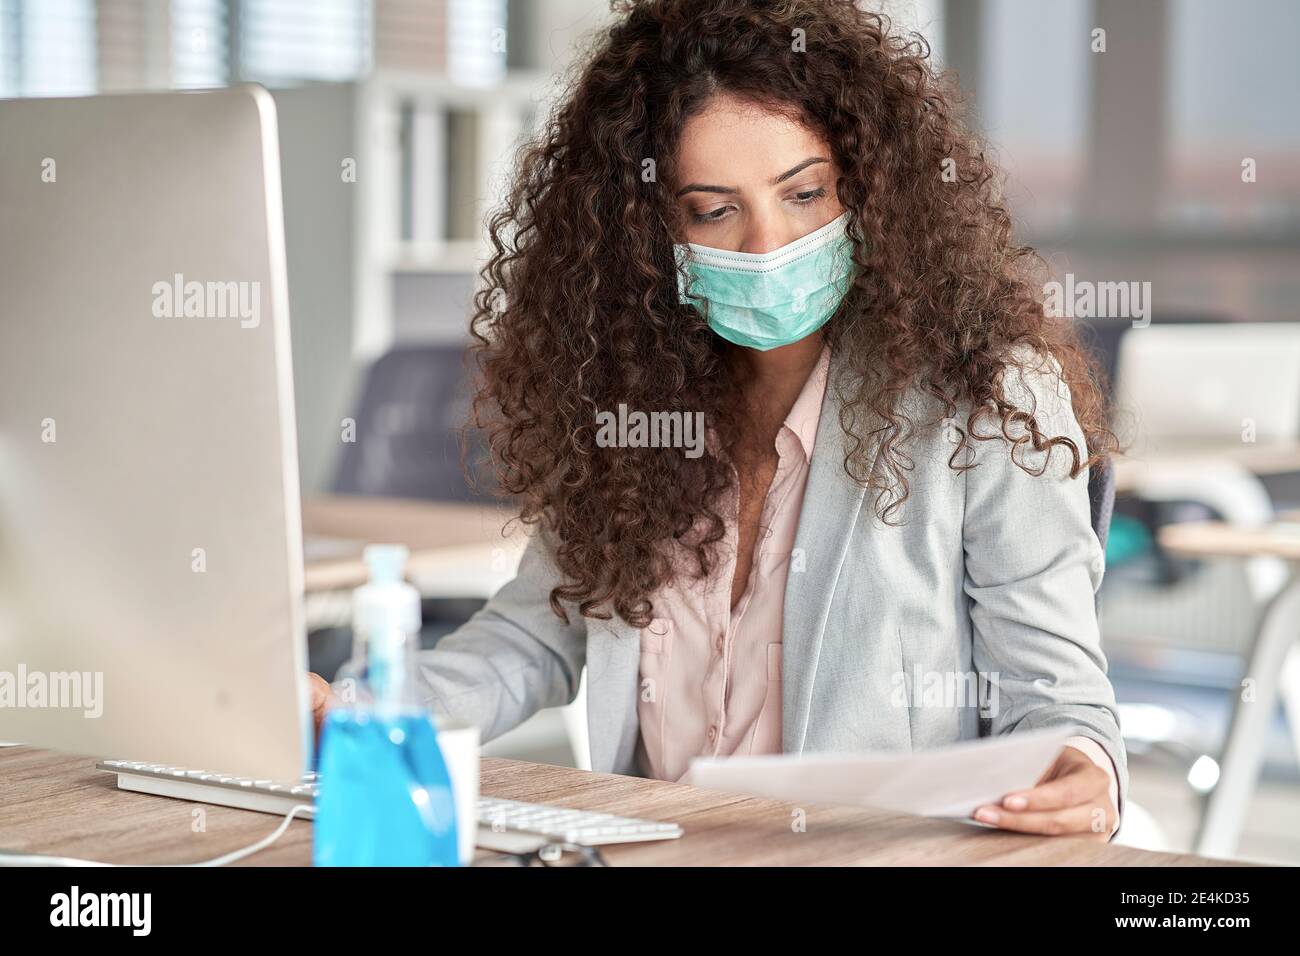 Une femme professionnelle examine un document papier pendant qu'elle travaille sur un bureau pendant la COVID-19 Banque D'Images